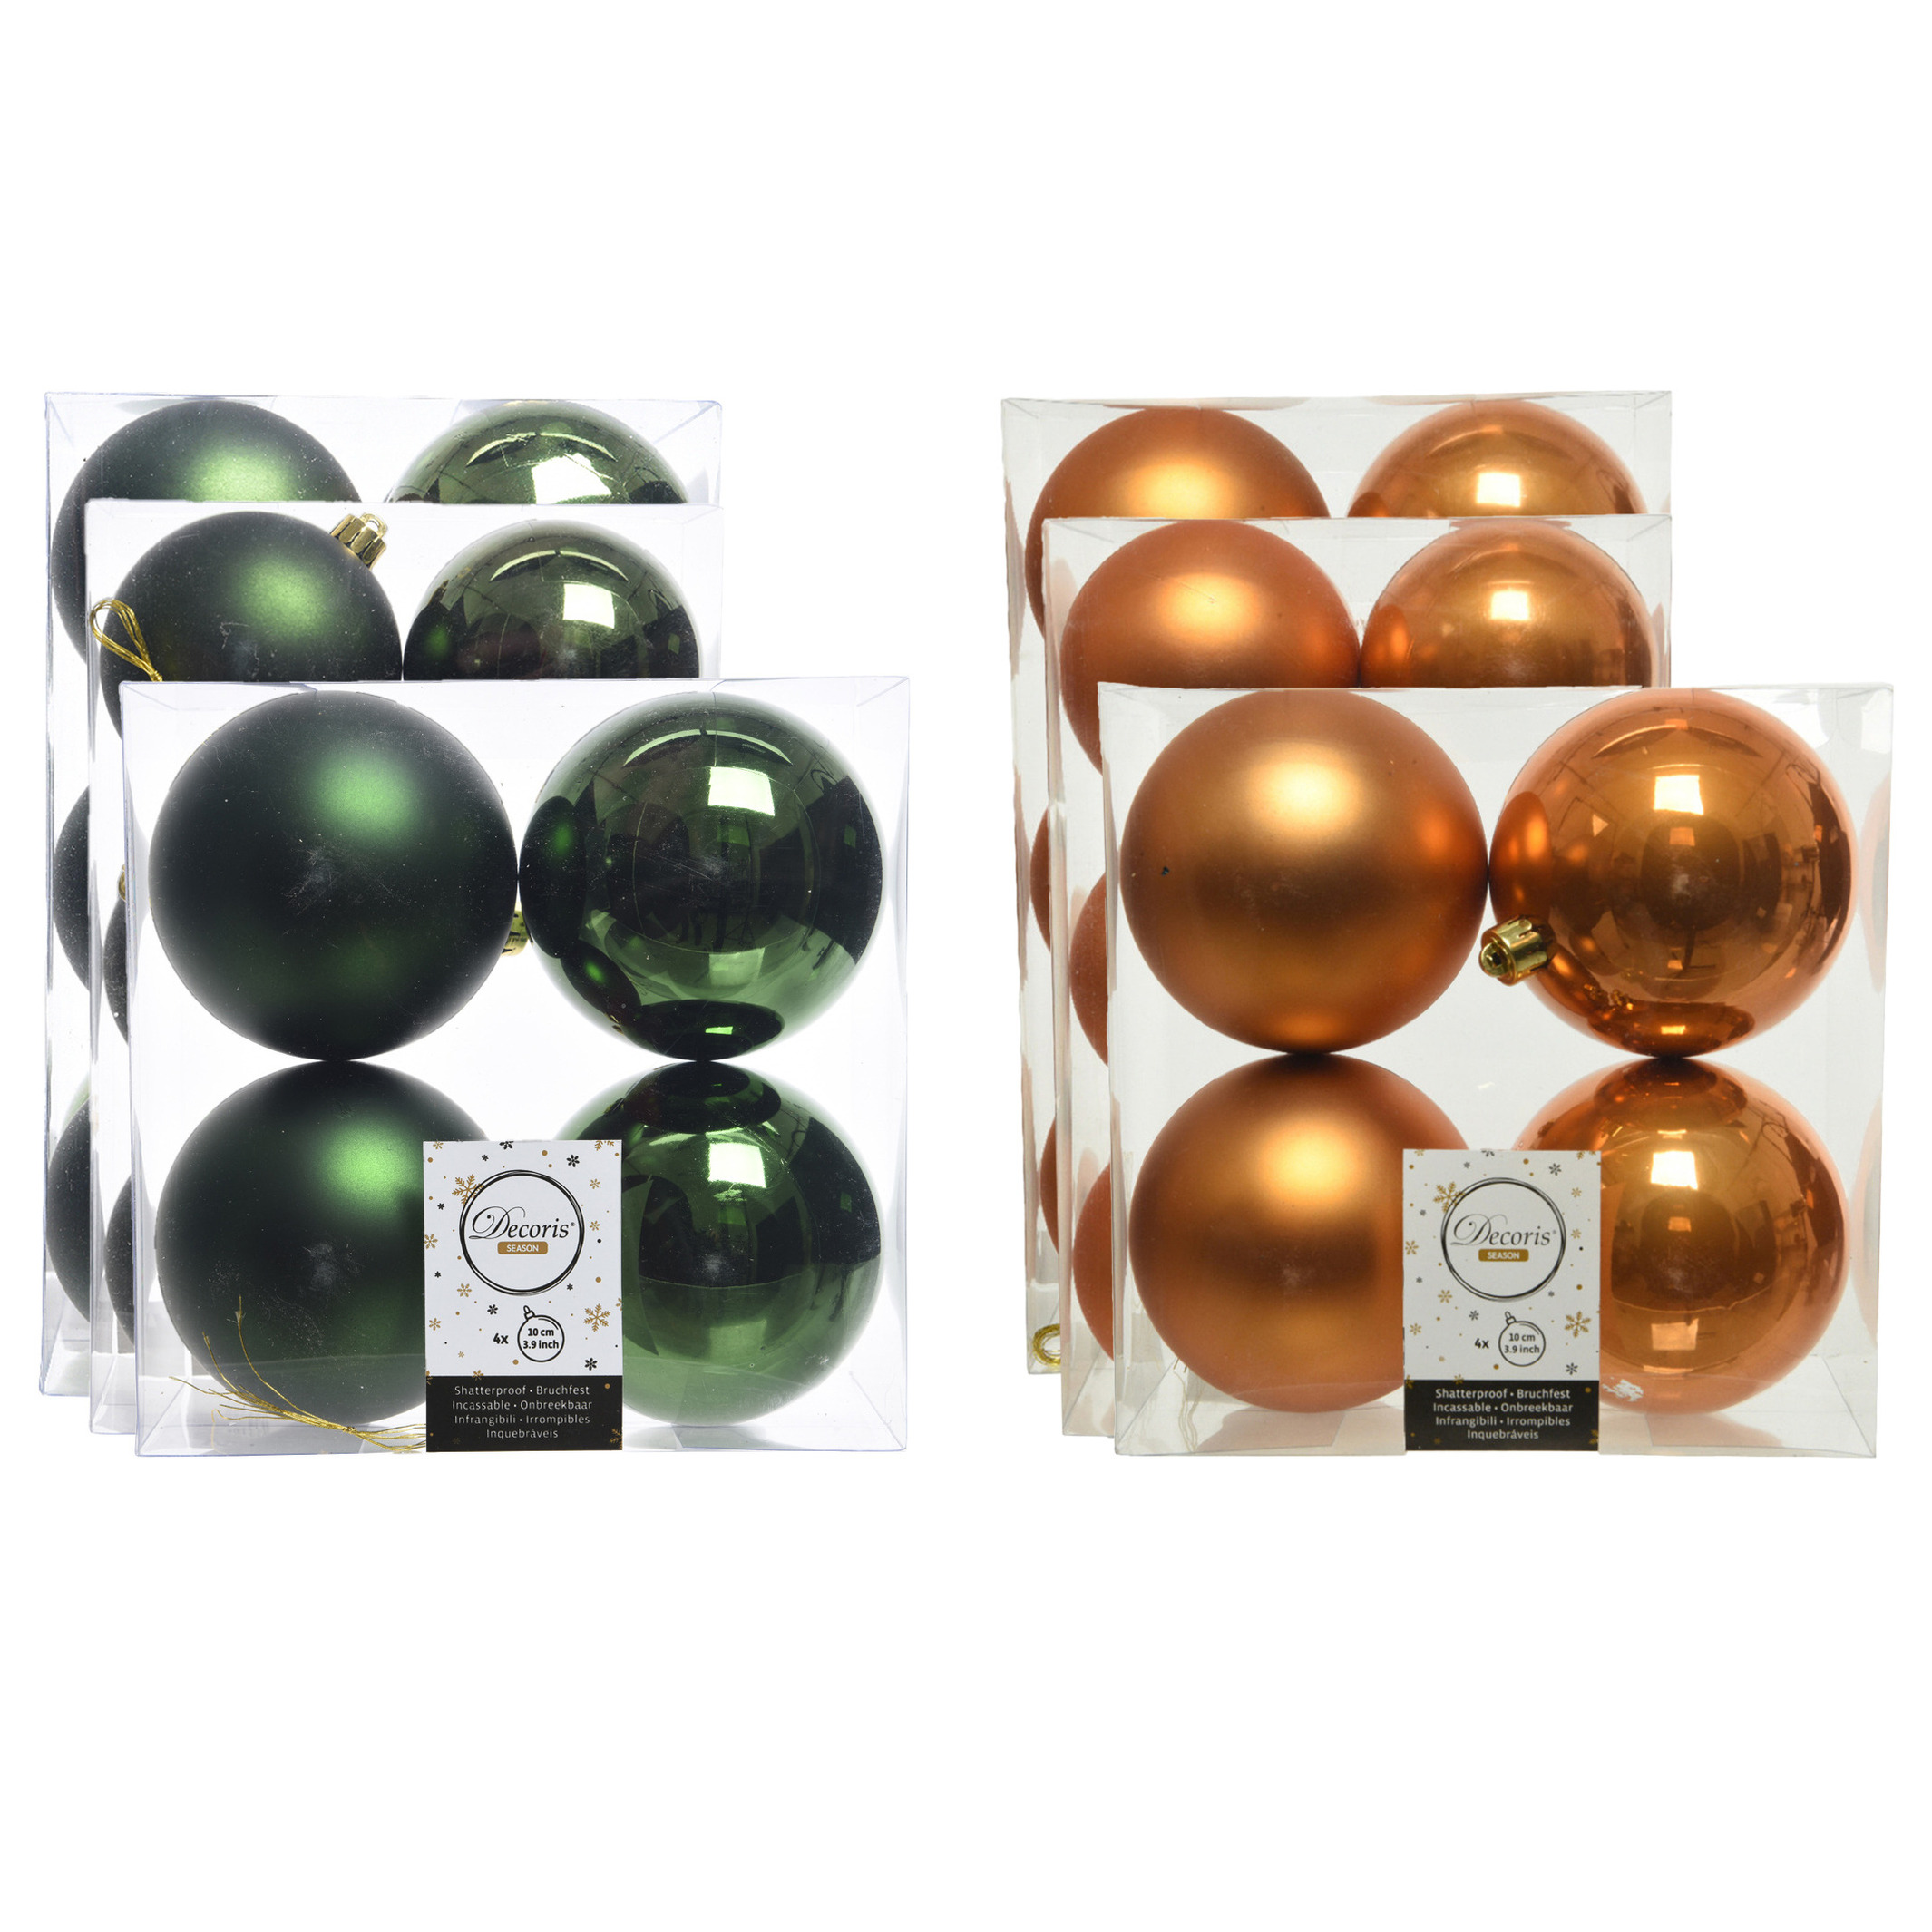 Kerstversiering kunststof kerstballen mix cognac-donkergroen 6-8-10 cm pakket van 44x stuks